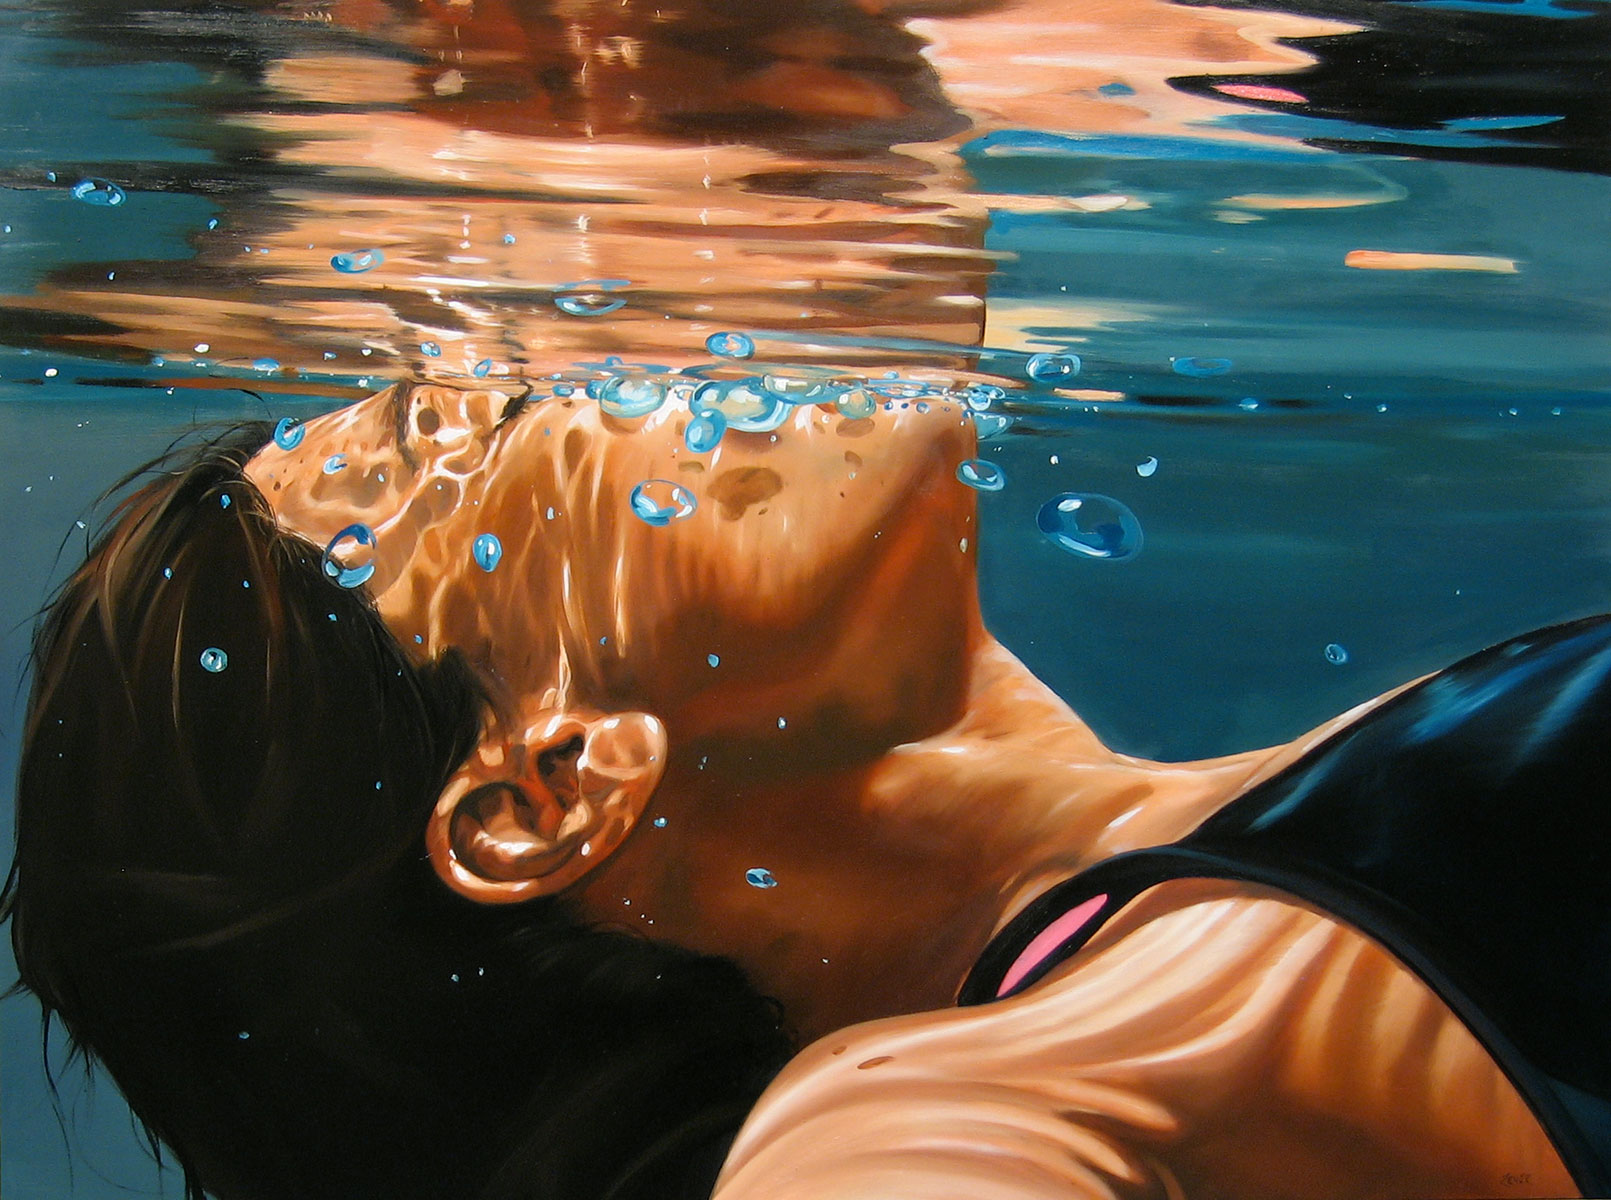 Бутылка наполненная водой тонет в воде. Реалистическая живопись Eric Zener.